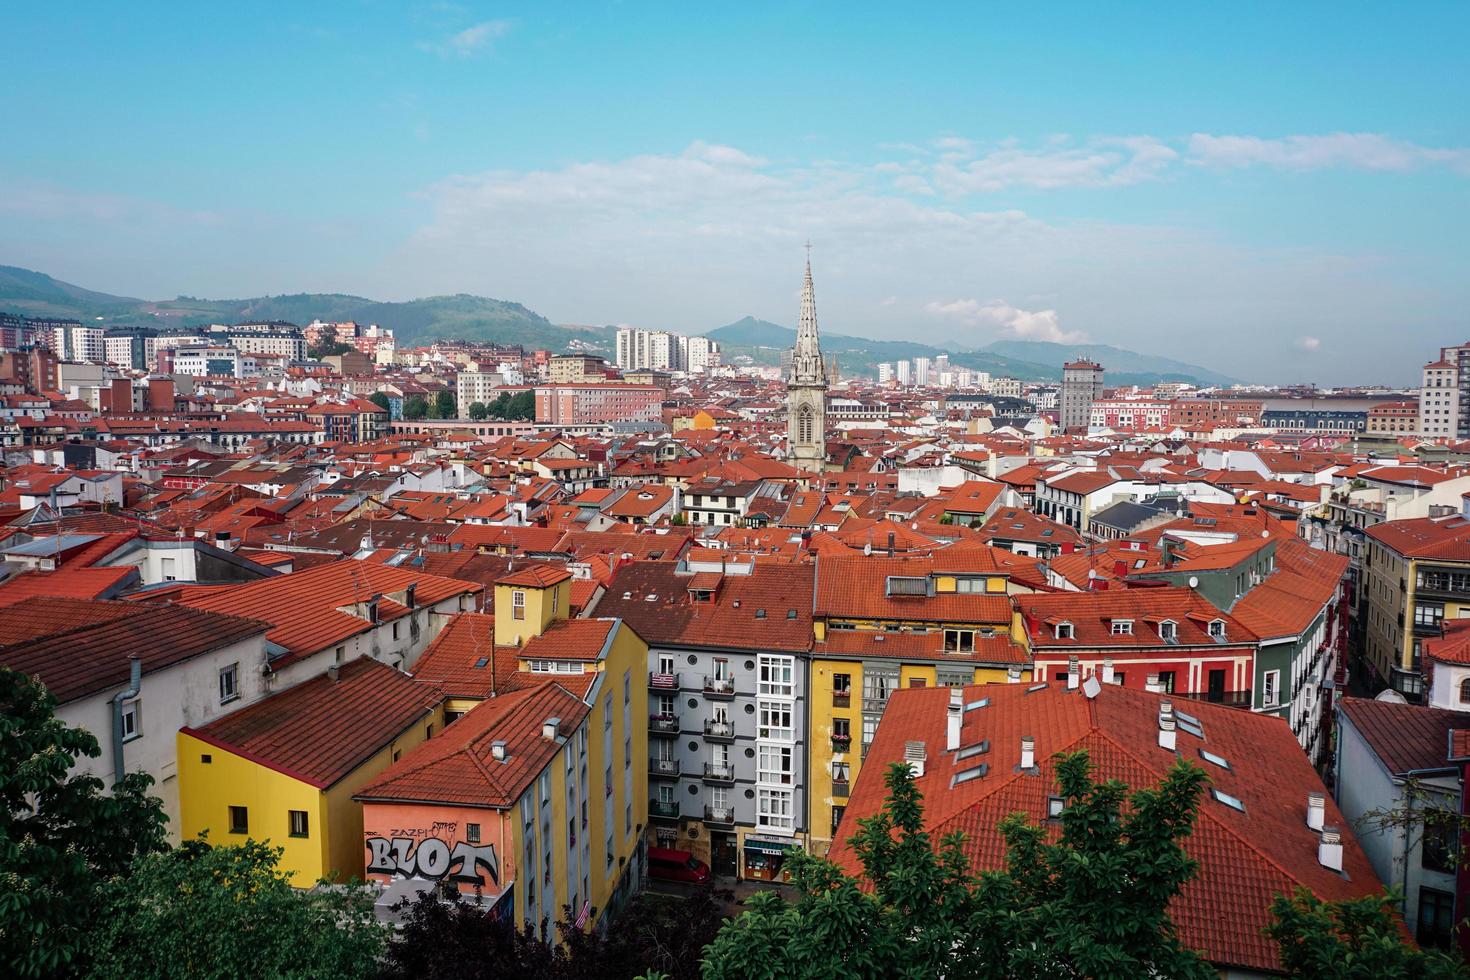 vista da cidade de bilbao, pais basco, espanha foto